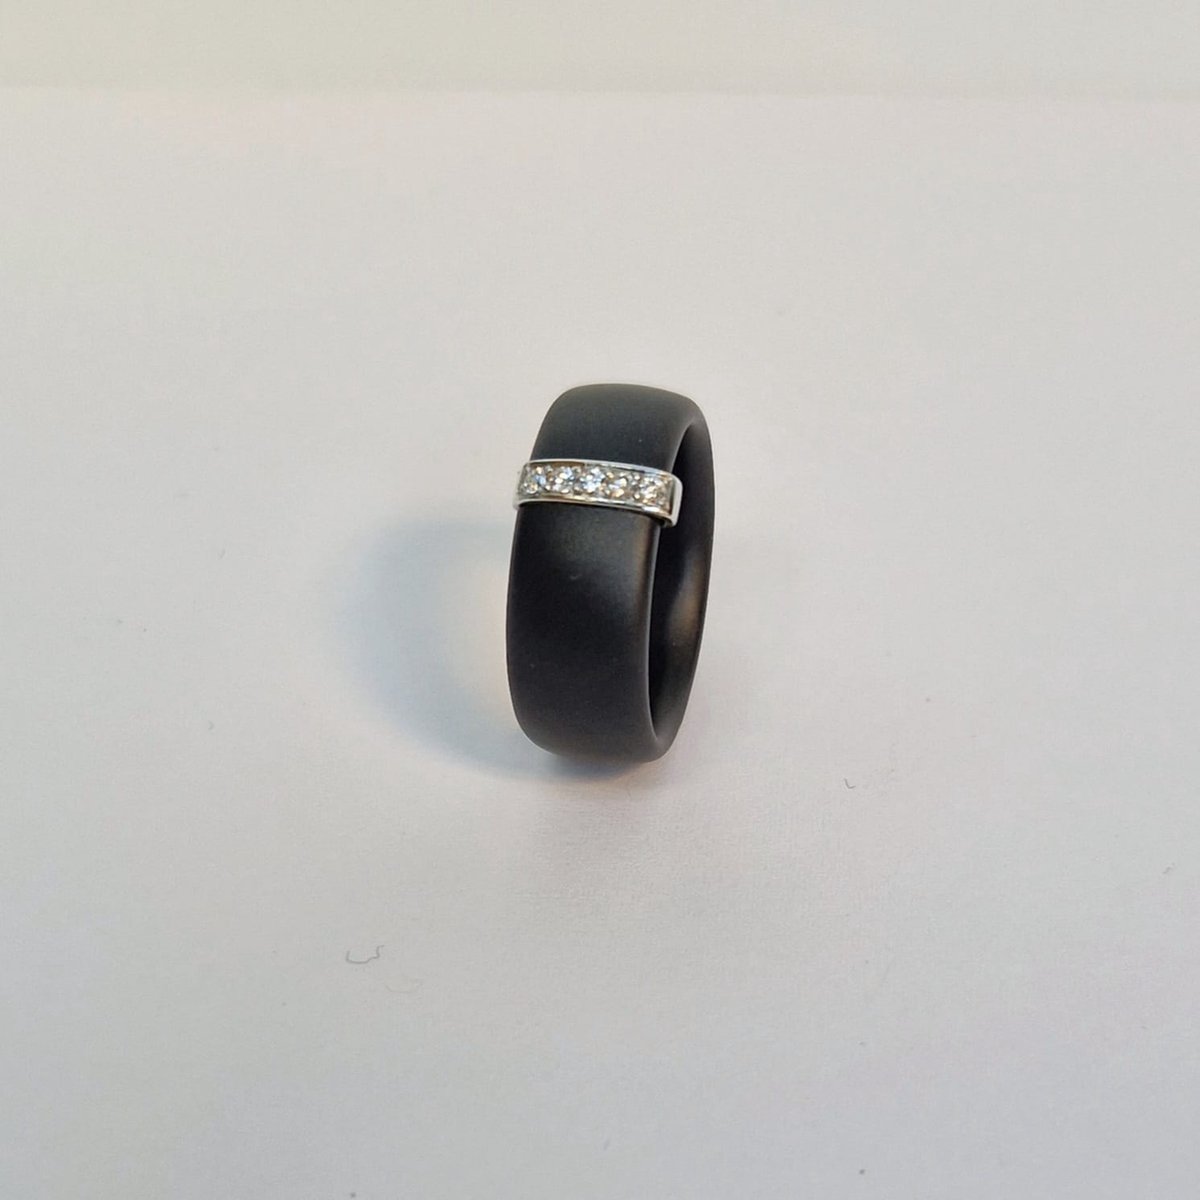 Ring dames - Orotech - AK 4/29 - keramiek - diamant - witgoud - 18 karaat - sale juwelier Verlinden St. Hubert van €485,= voor €389,=